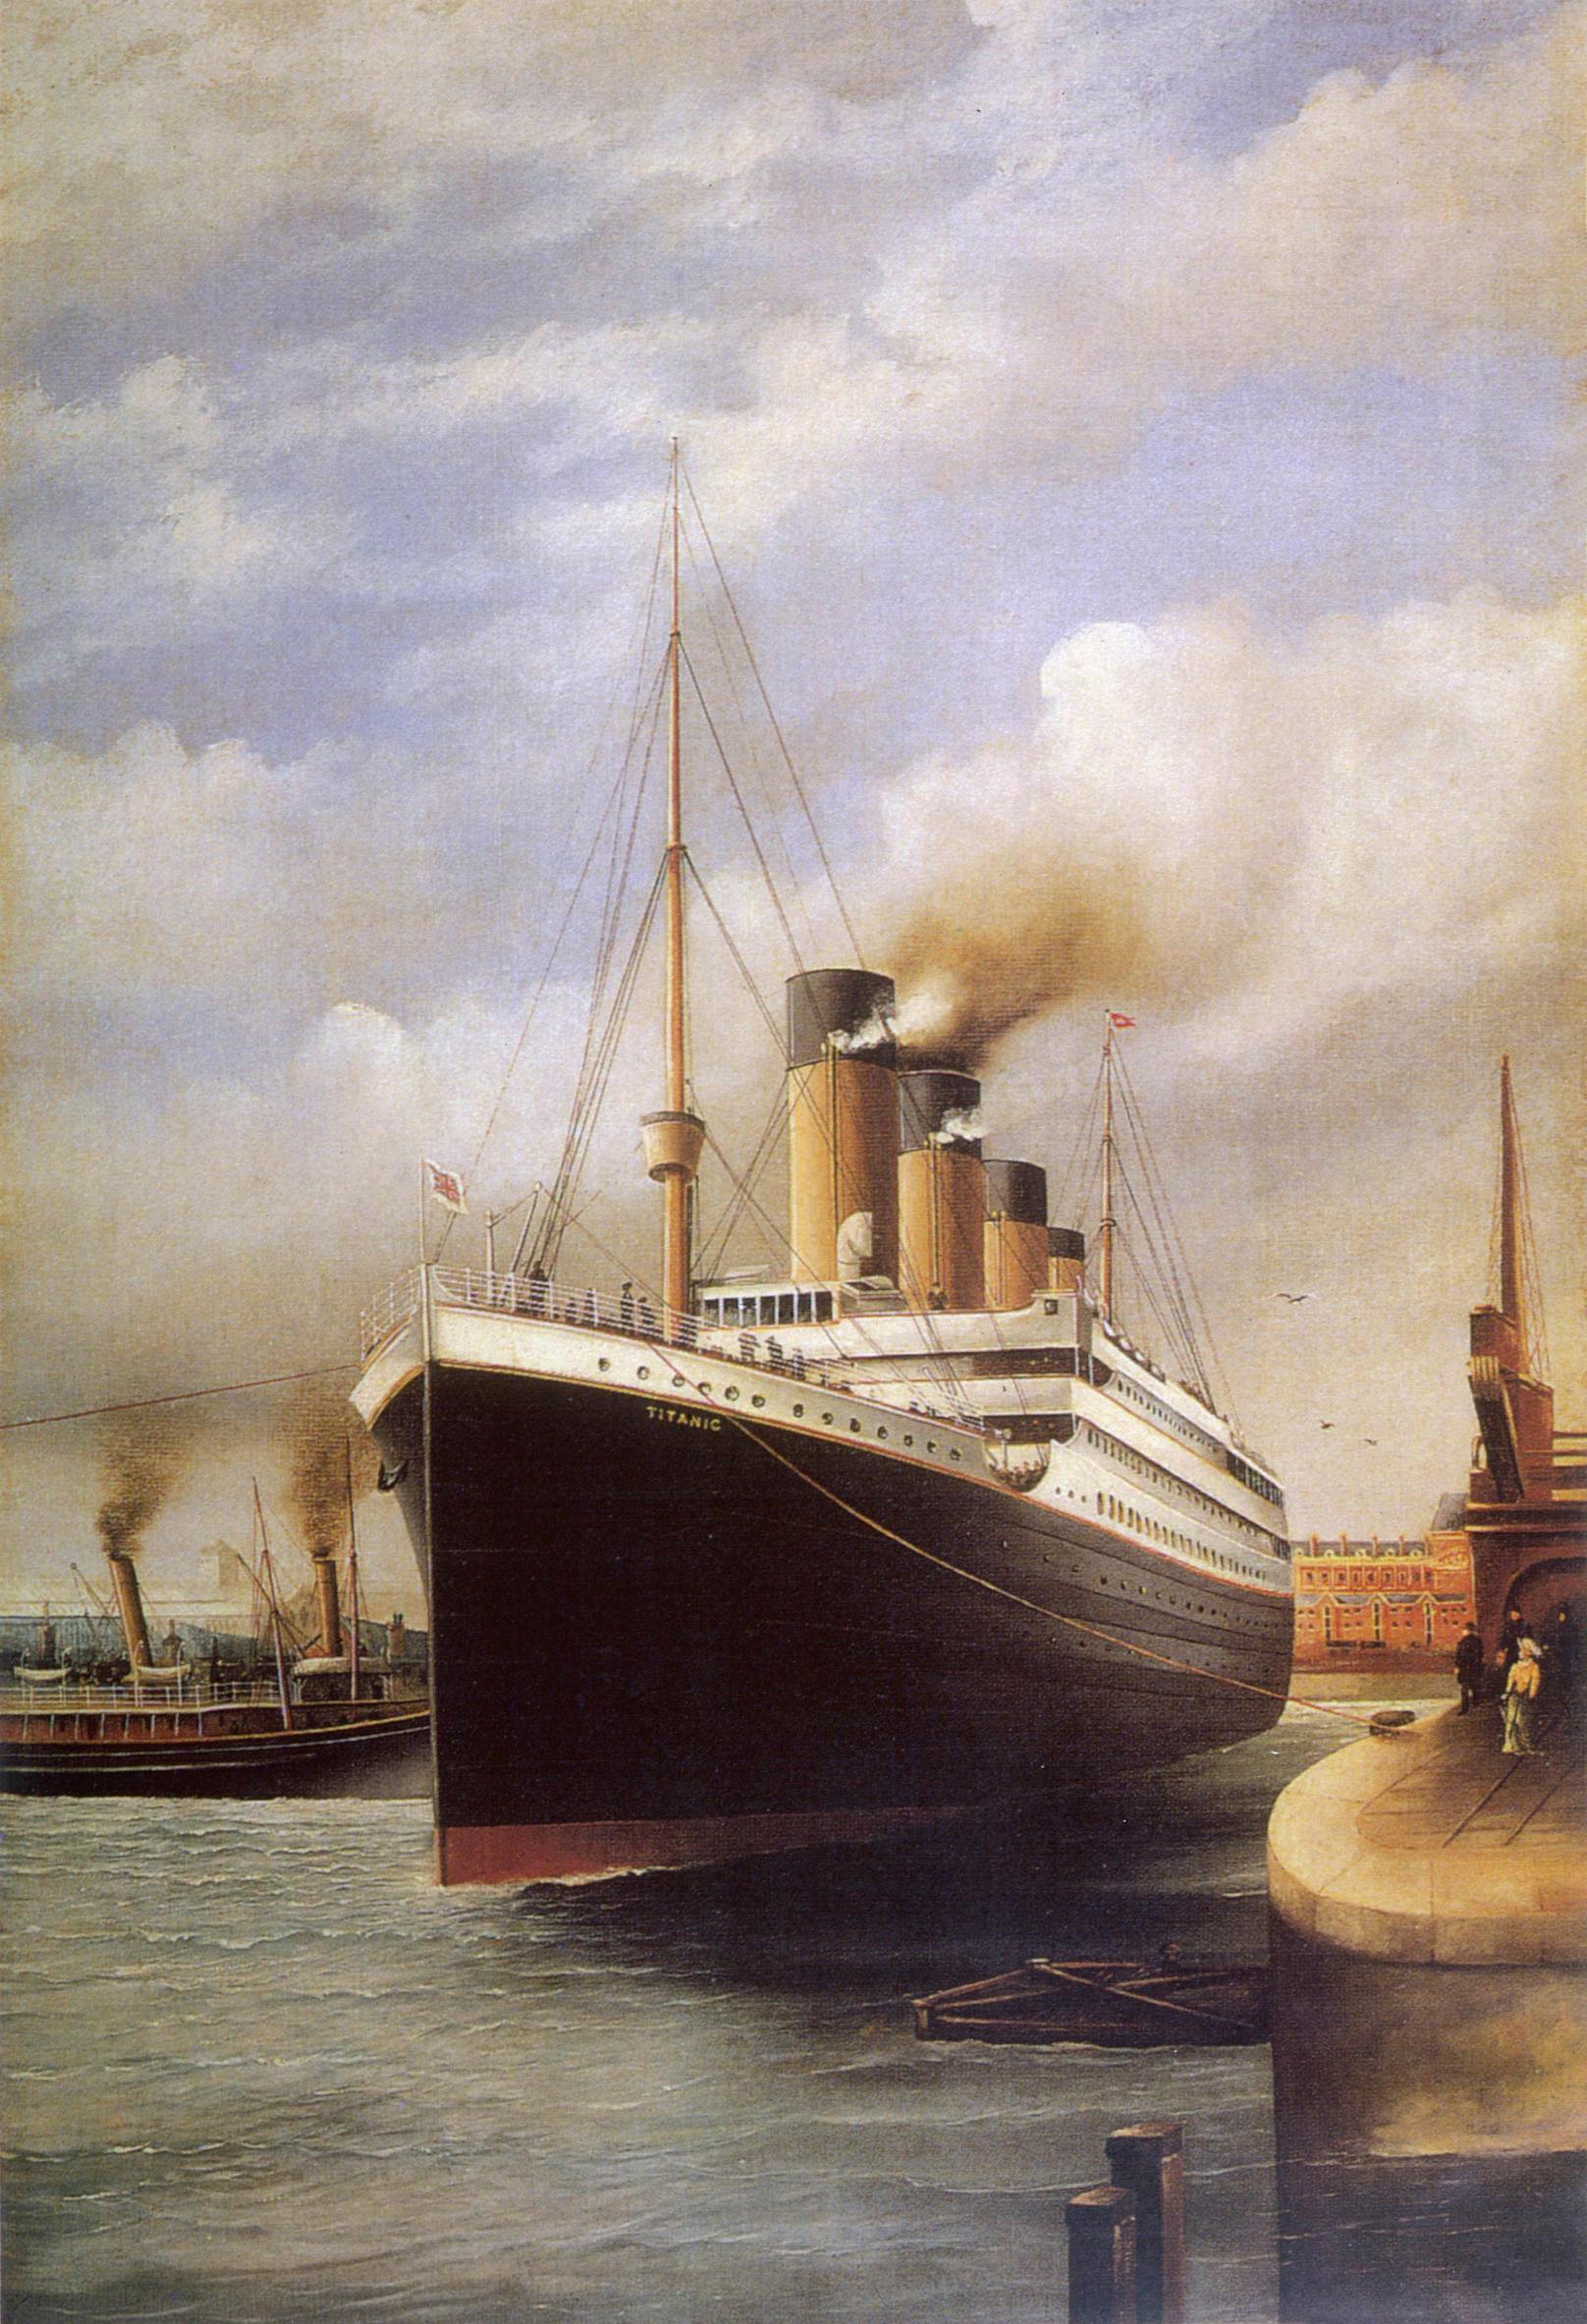 Ein Bild der "Titanic" aus dem Jahr 1912.